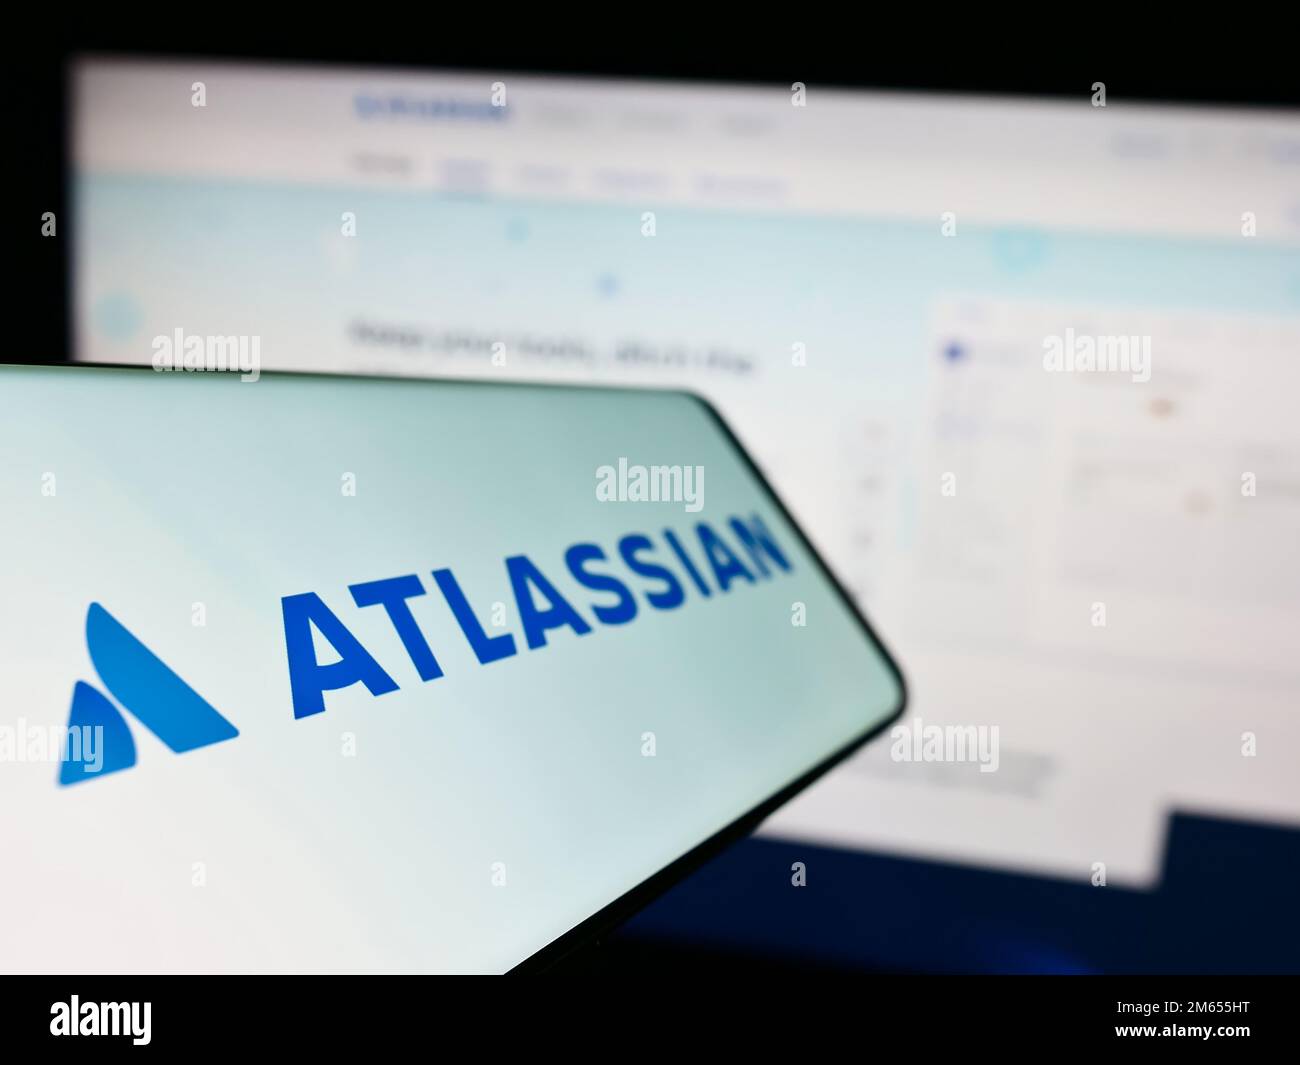 Cellulare con il logo della società australiana di software Atlassian Corporation sullo schermo di fronte al sito web aziendale. Messa a fuoco a sinistra del display del telefono. Foto Stock